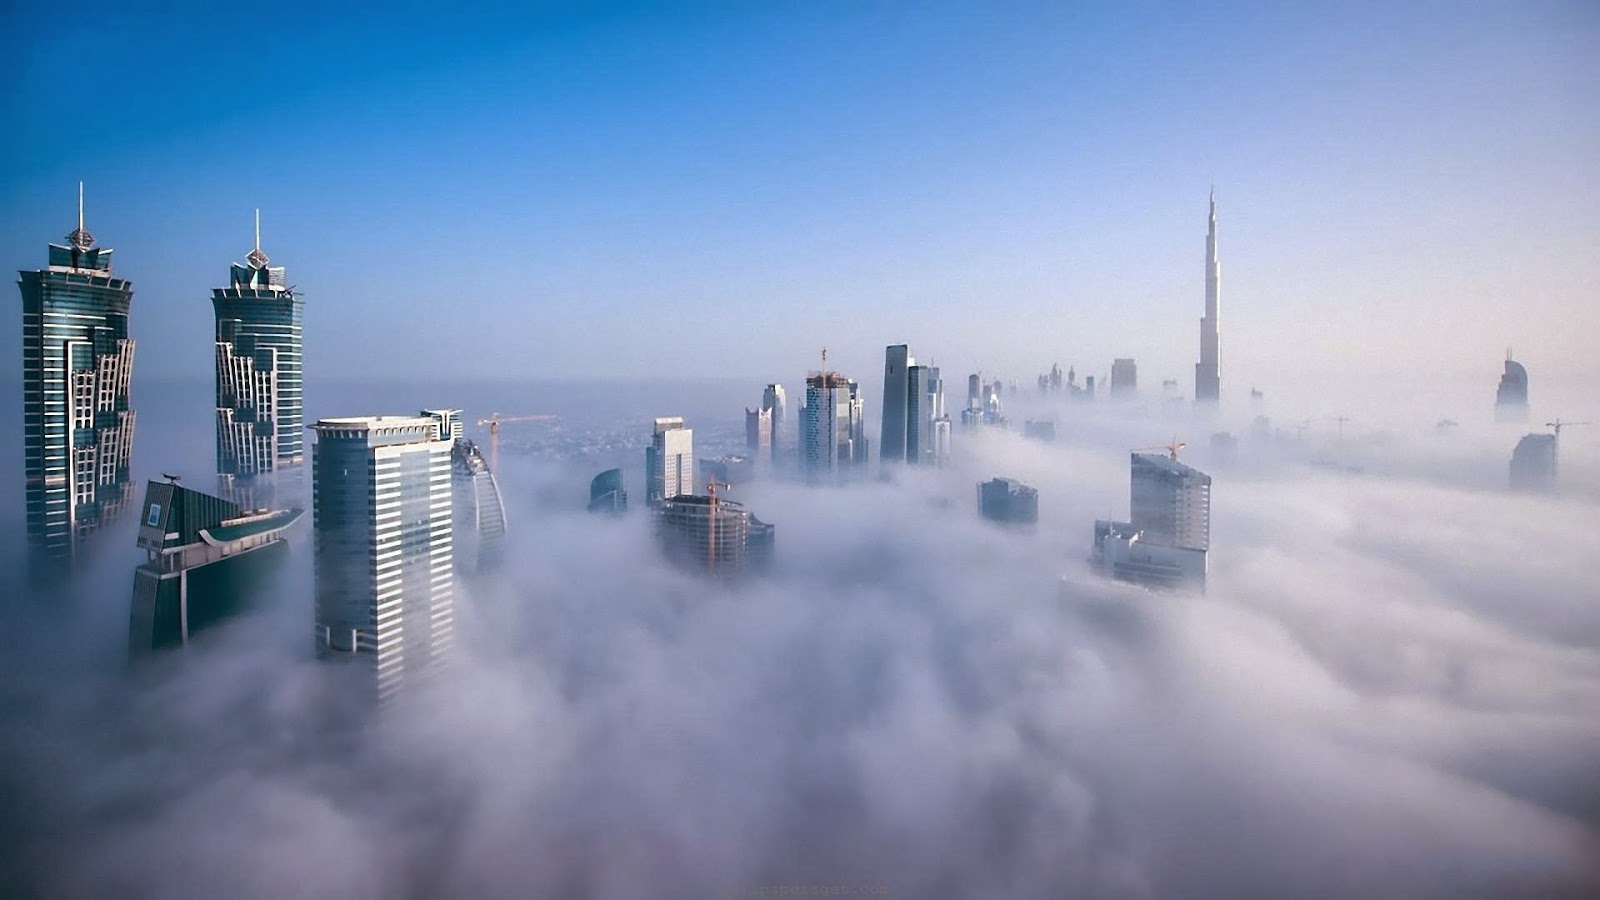 
Коммерческая недвижимость ОАЭ в 2014 г.